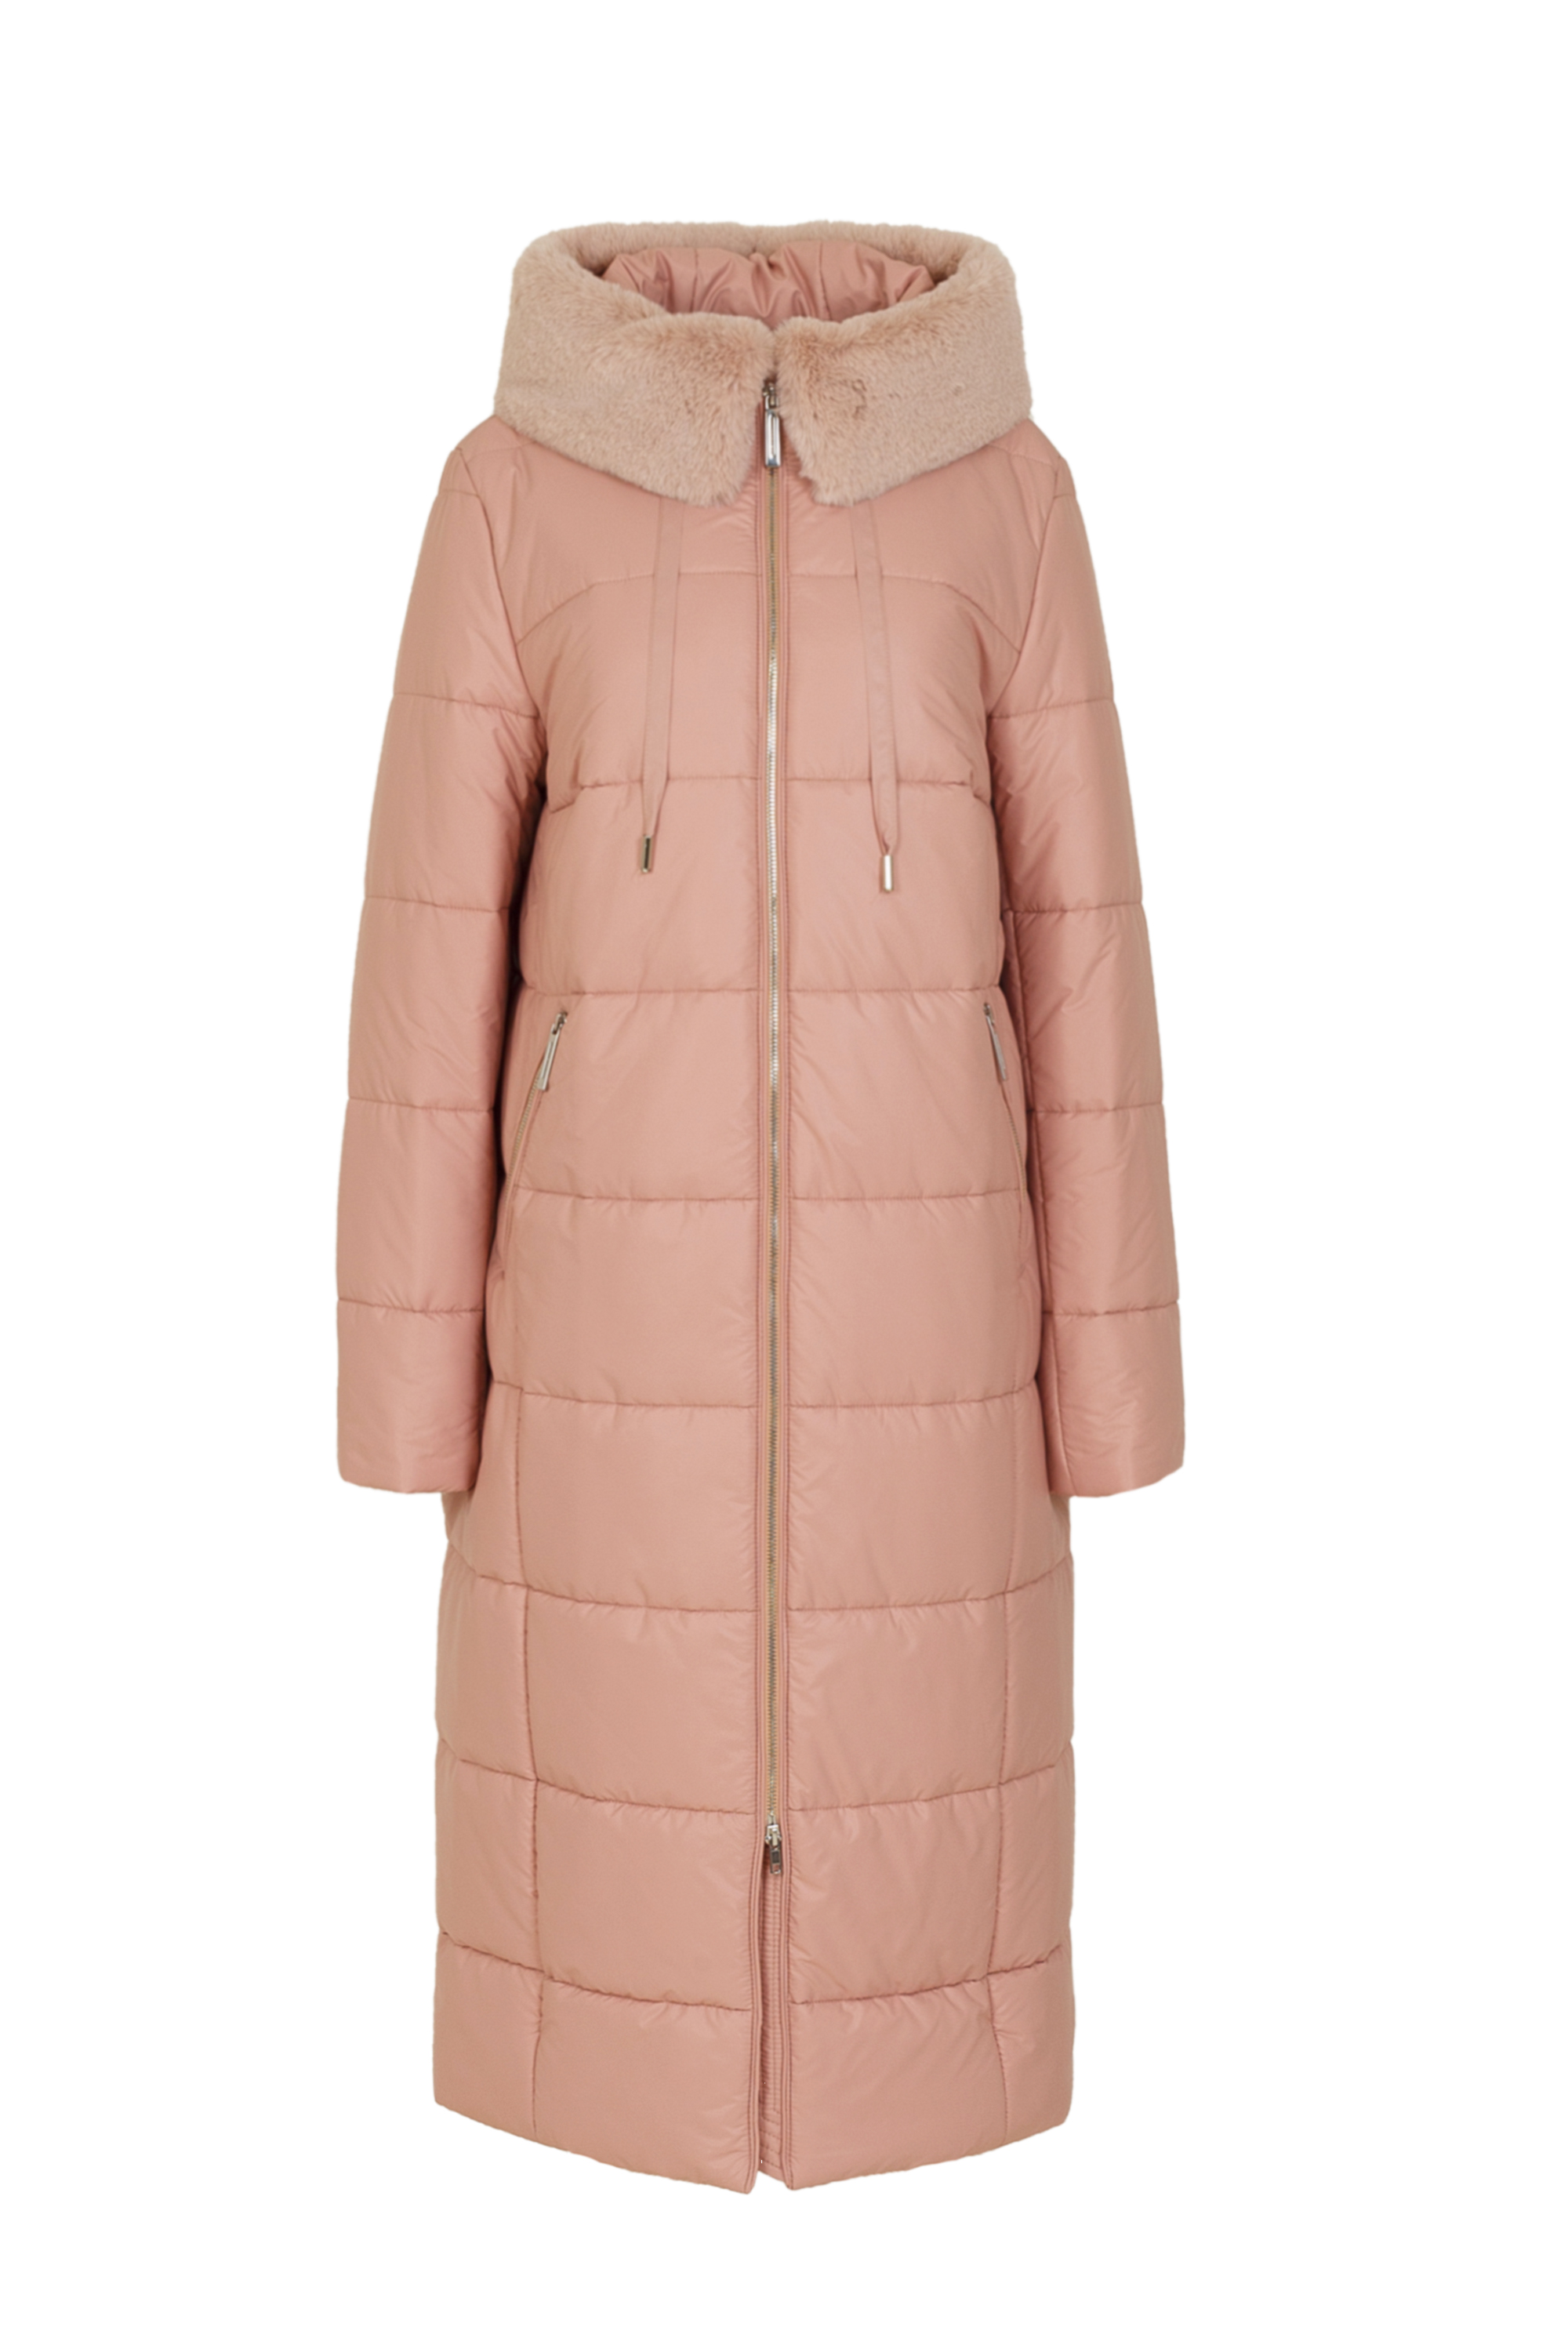 Пальто женское плащевое утепленное 5S-13062-1